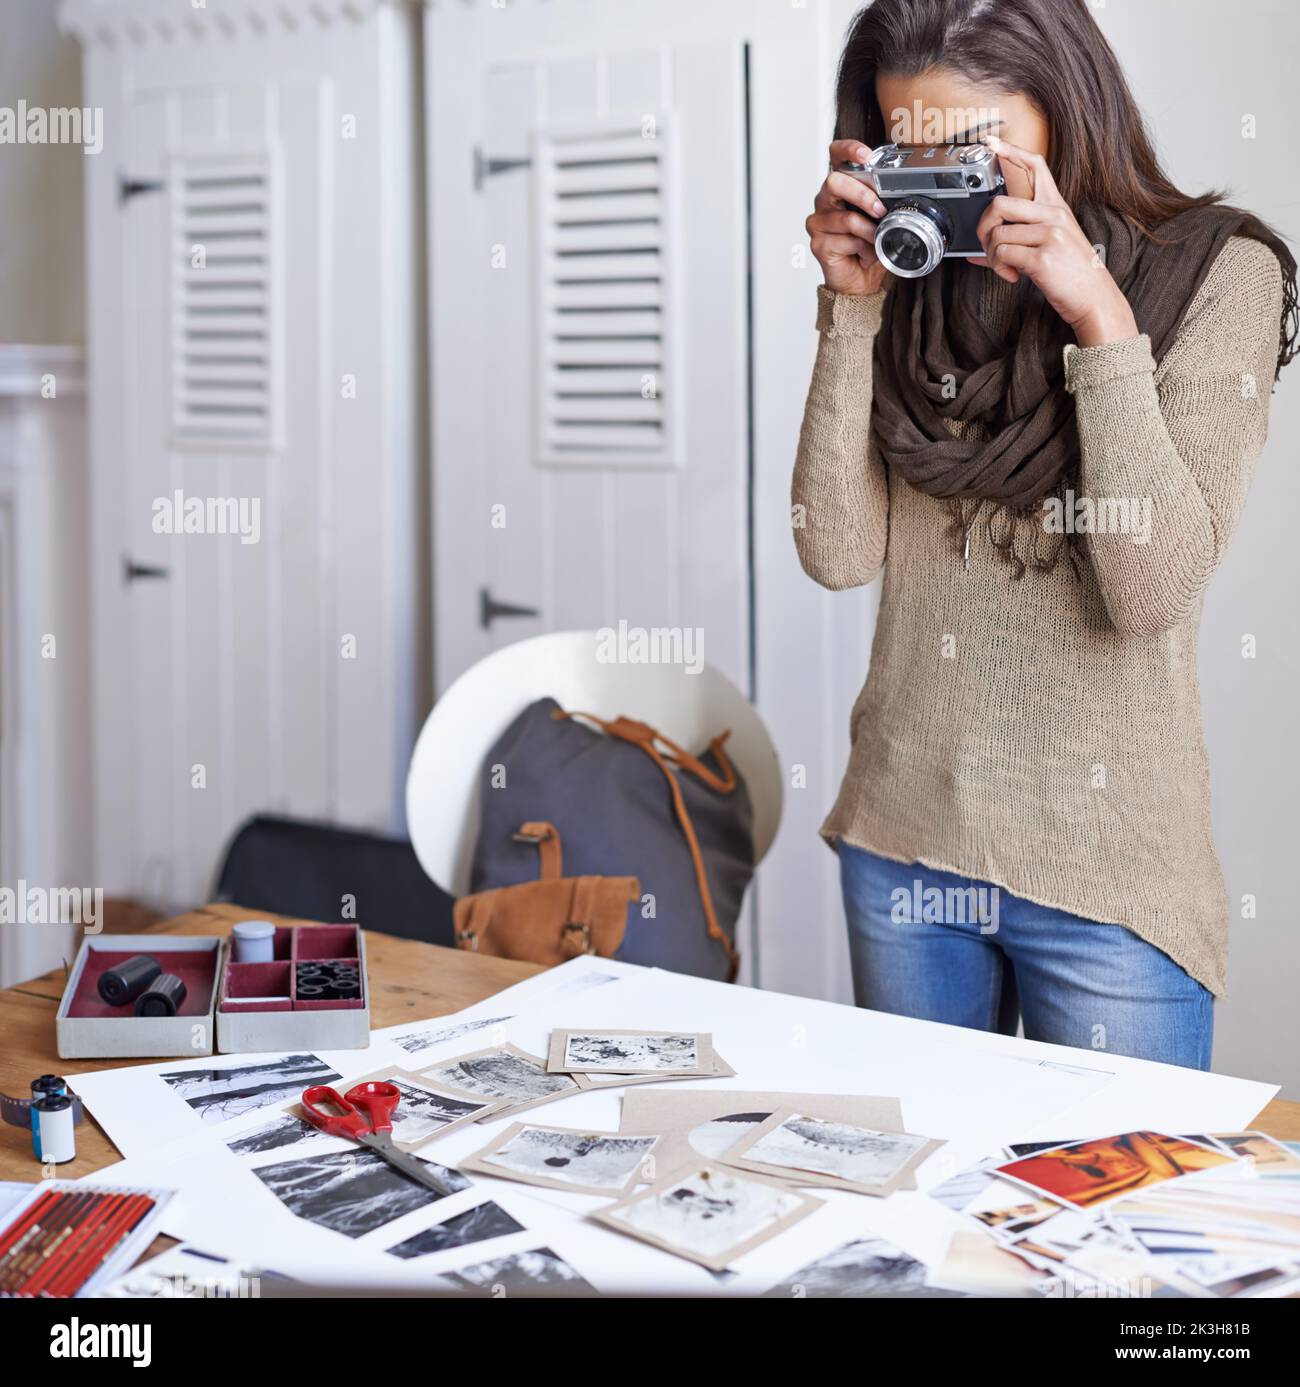 Erfassen Sie ihren Arbeitsprozess. Eine junge Fotografin, die mit ihrer Kamera eine Momentaufnahme gemacht hat. Stockfoto